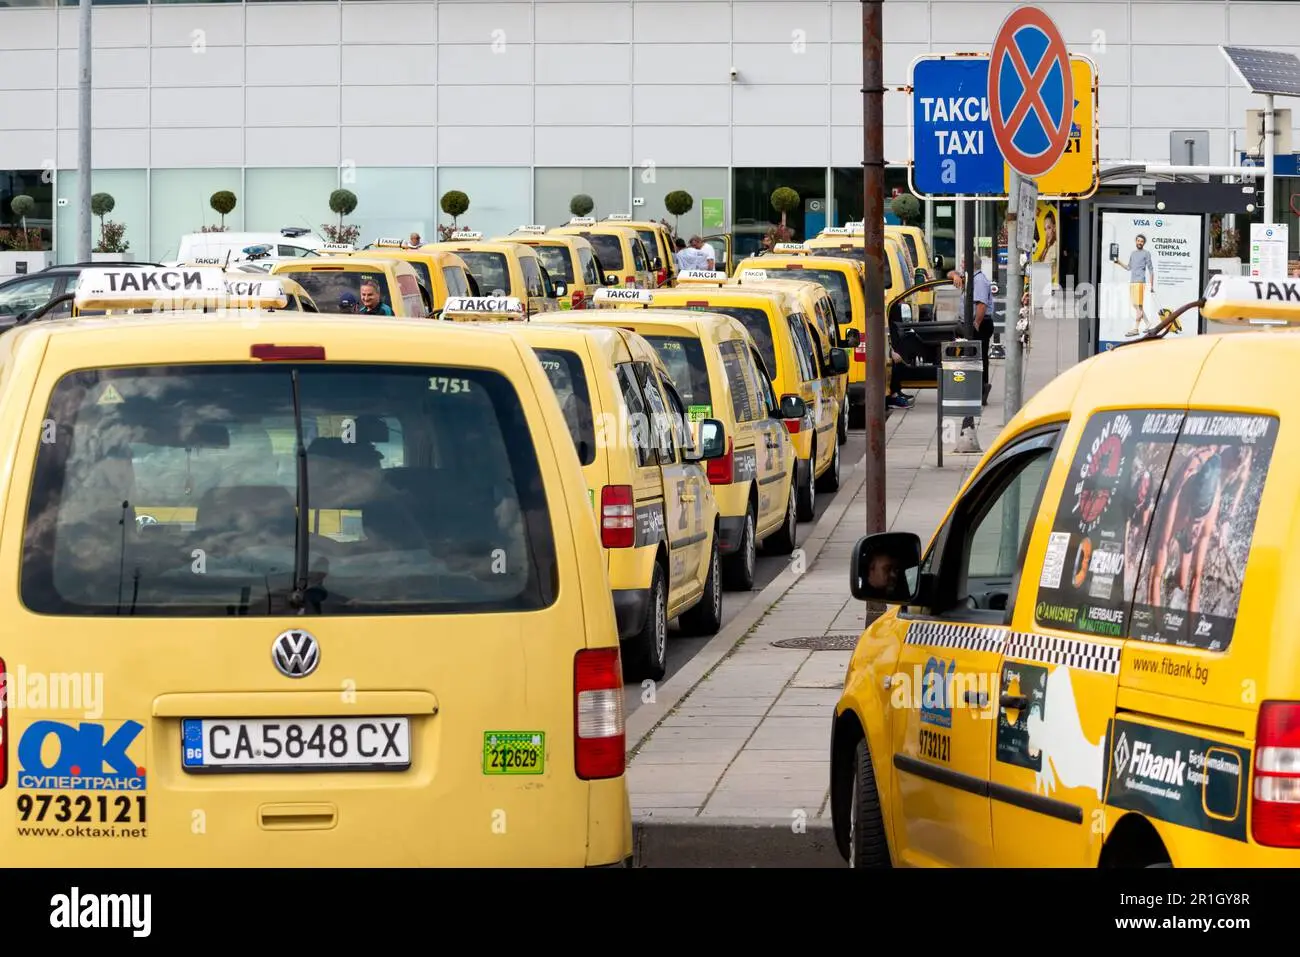 taxi aeropuerto sofia - Cuántas terminales tiene el aeropuerto de Sofía